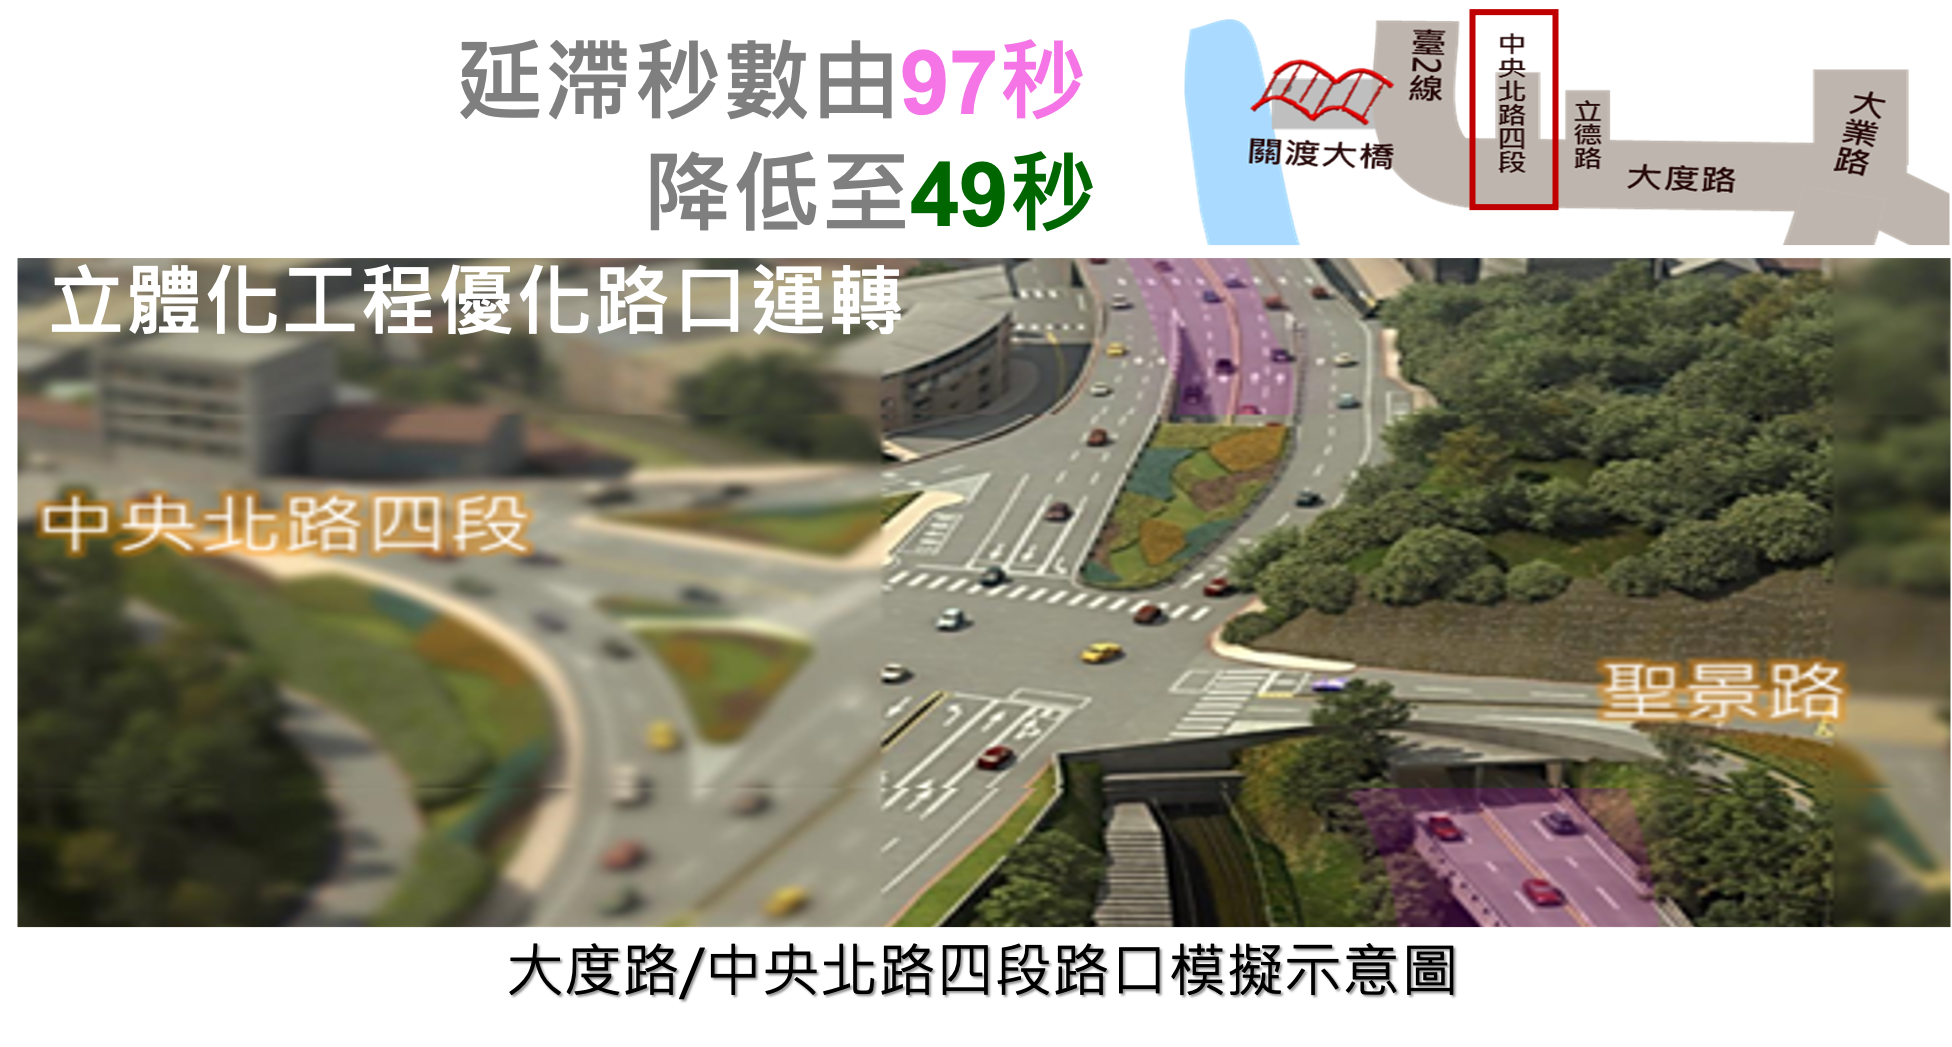 立體化工程提升臺北市路口的運轉效率圖